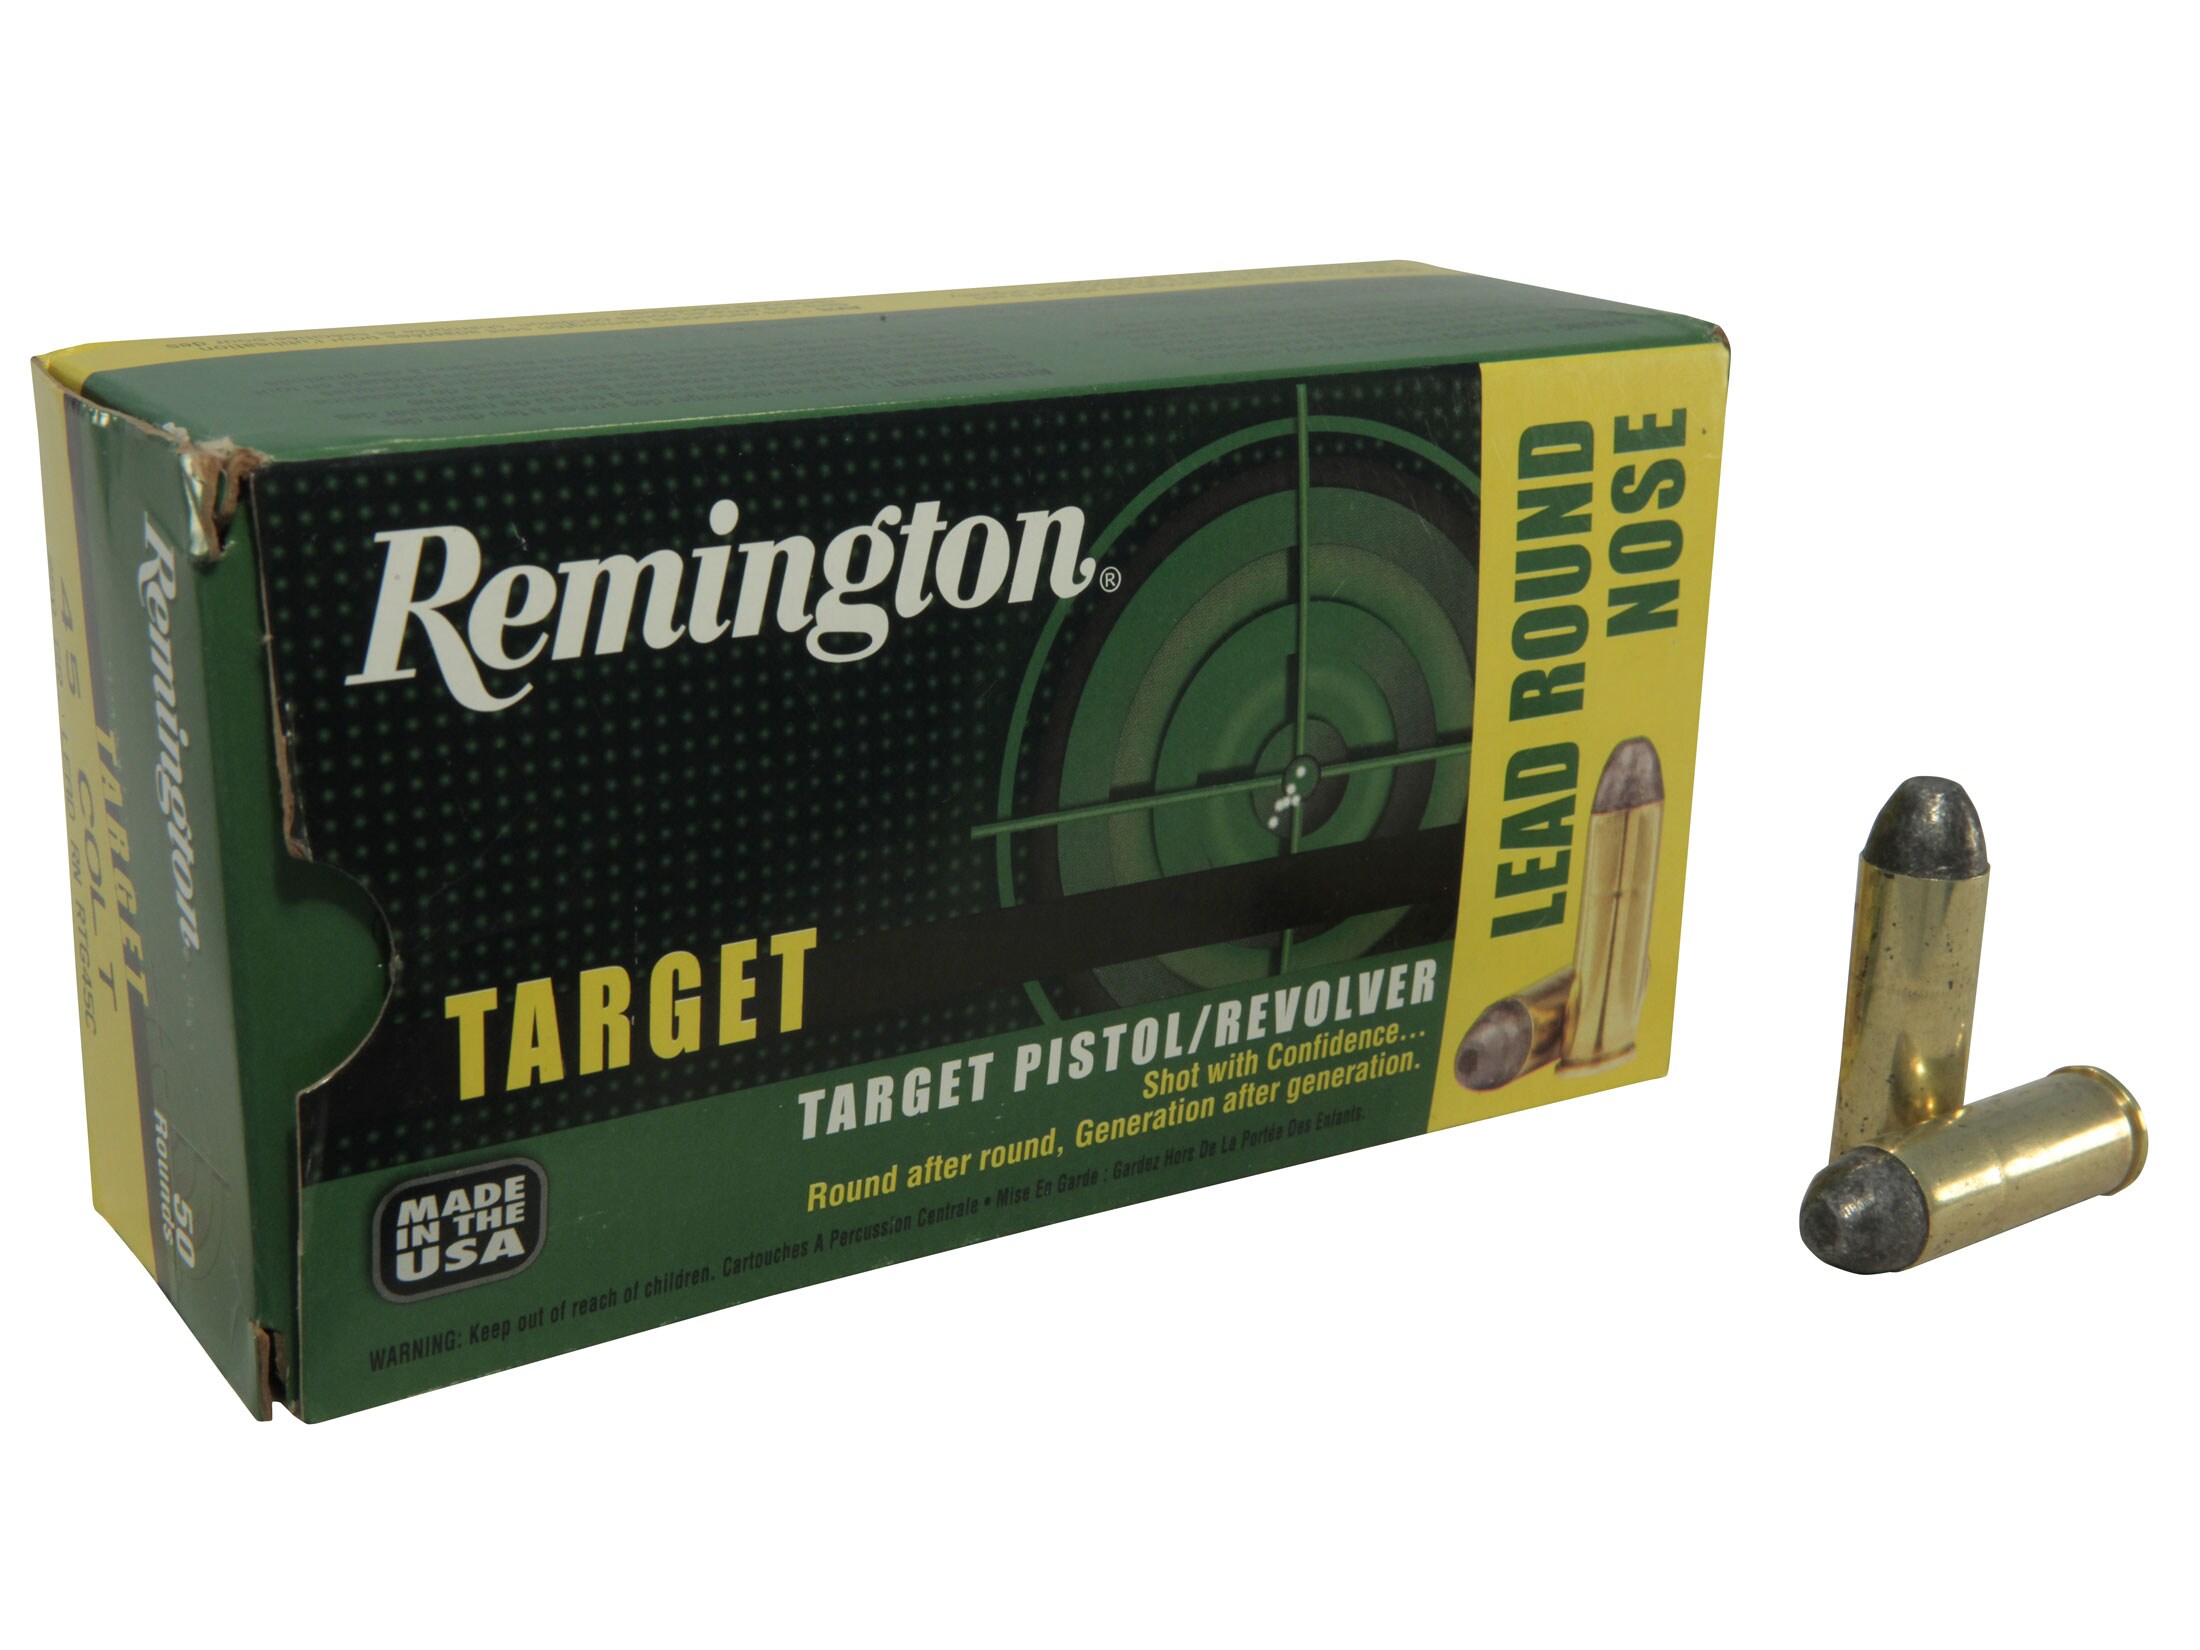 Remington Target 45 Colt (Long Colt) Ammo 250 Grain Round Nose Box of